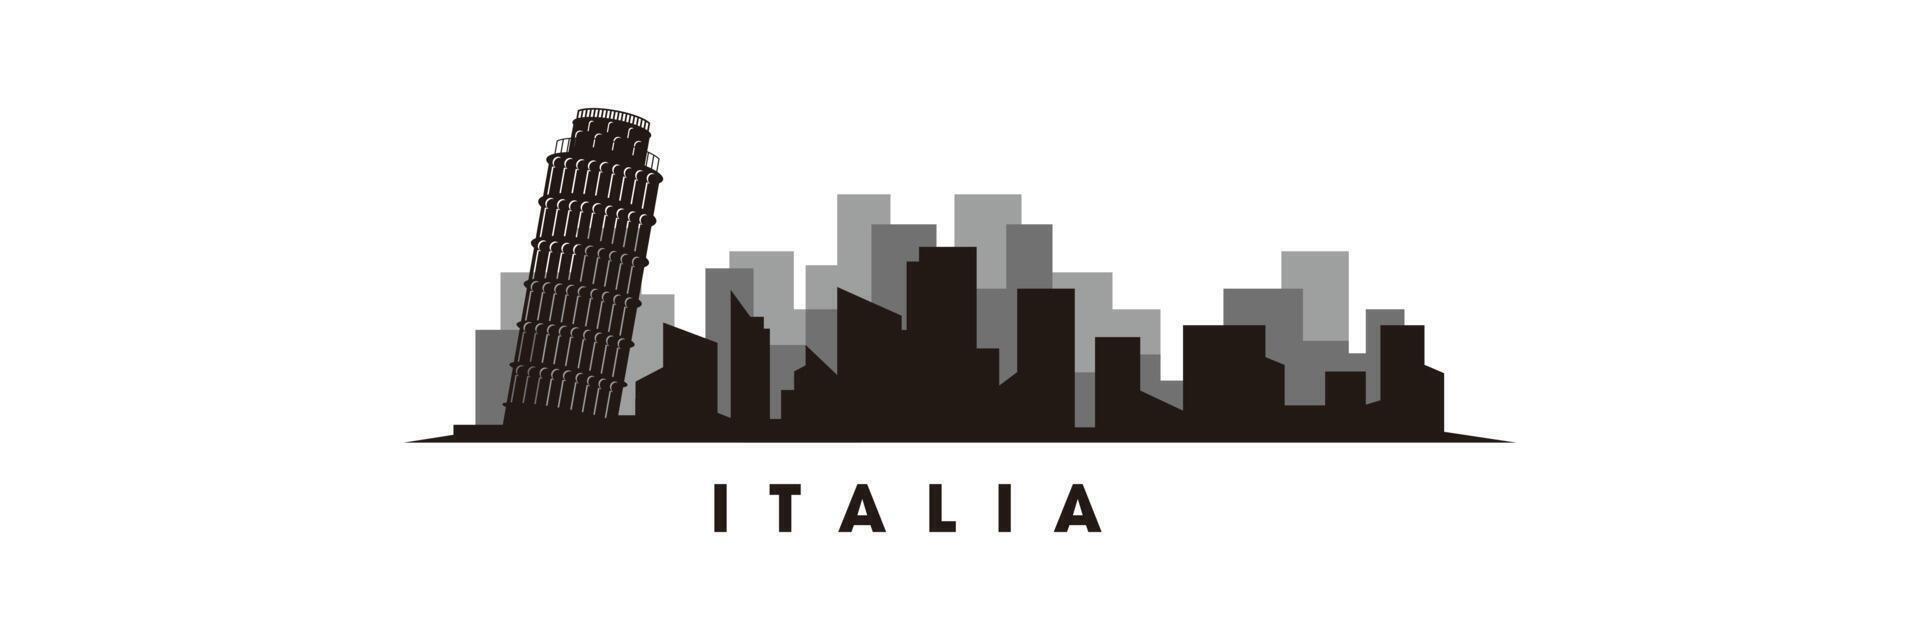 Pisa skyline and landmarks silhouette vector